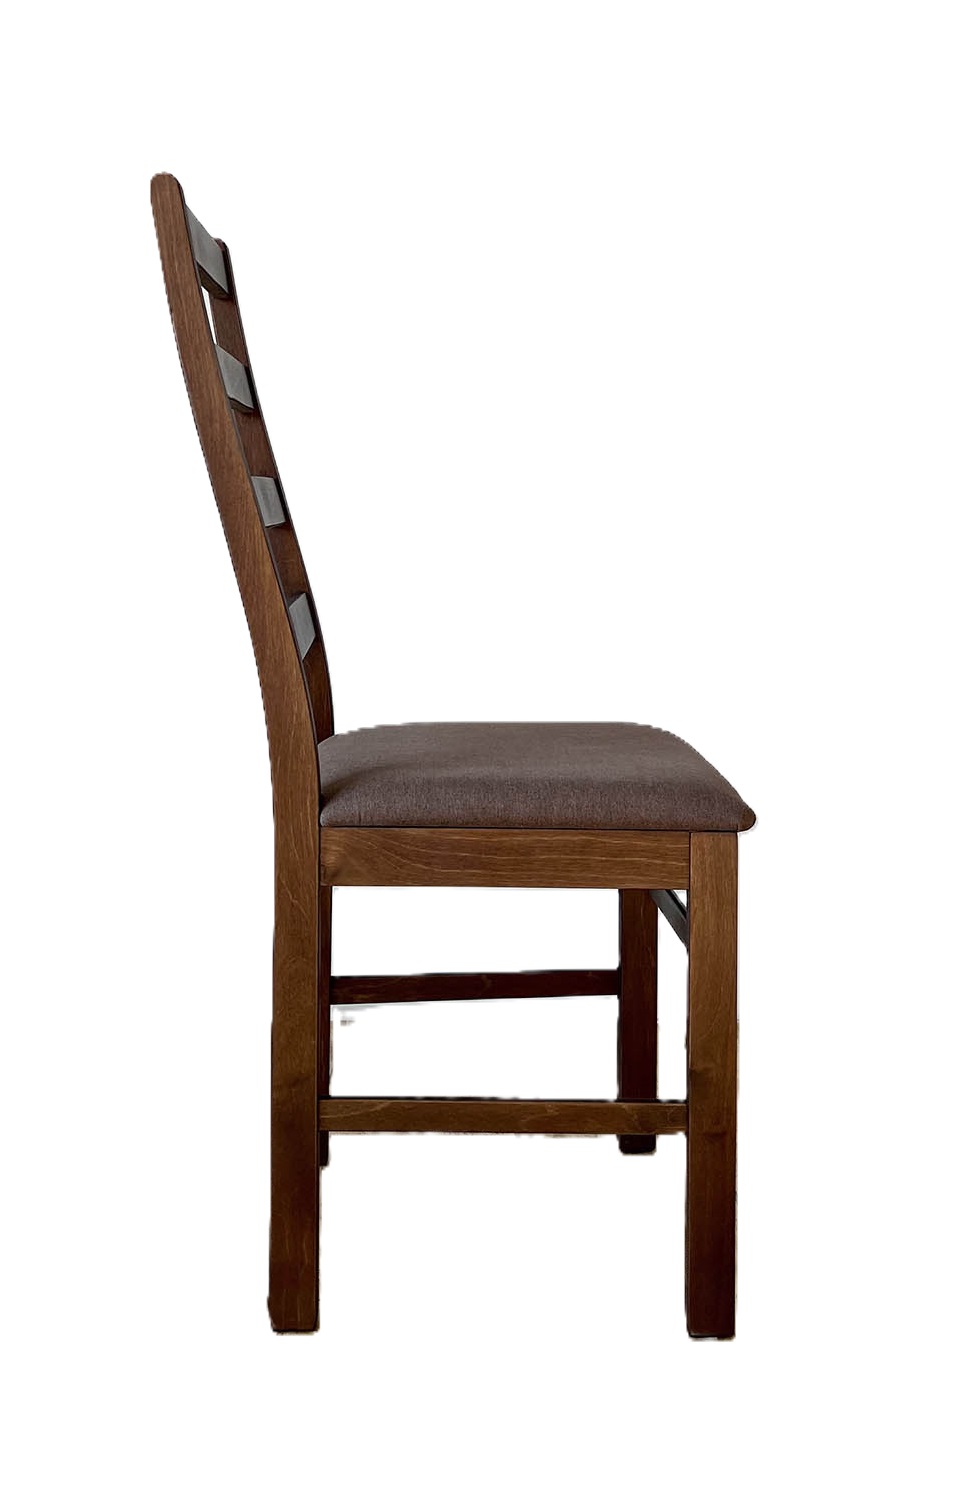 Деревянный стул со спинкой. Обивка из микровелюра. Цвет орех/коричневый.